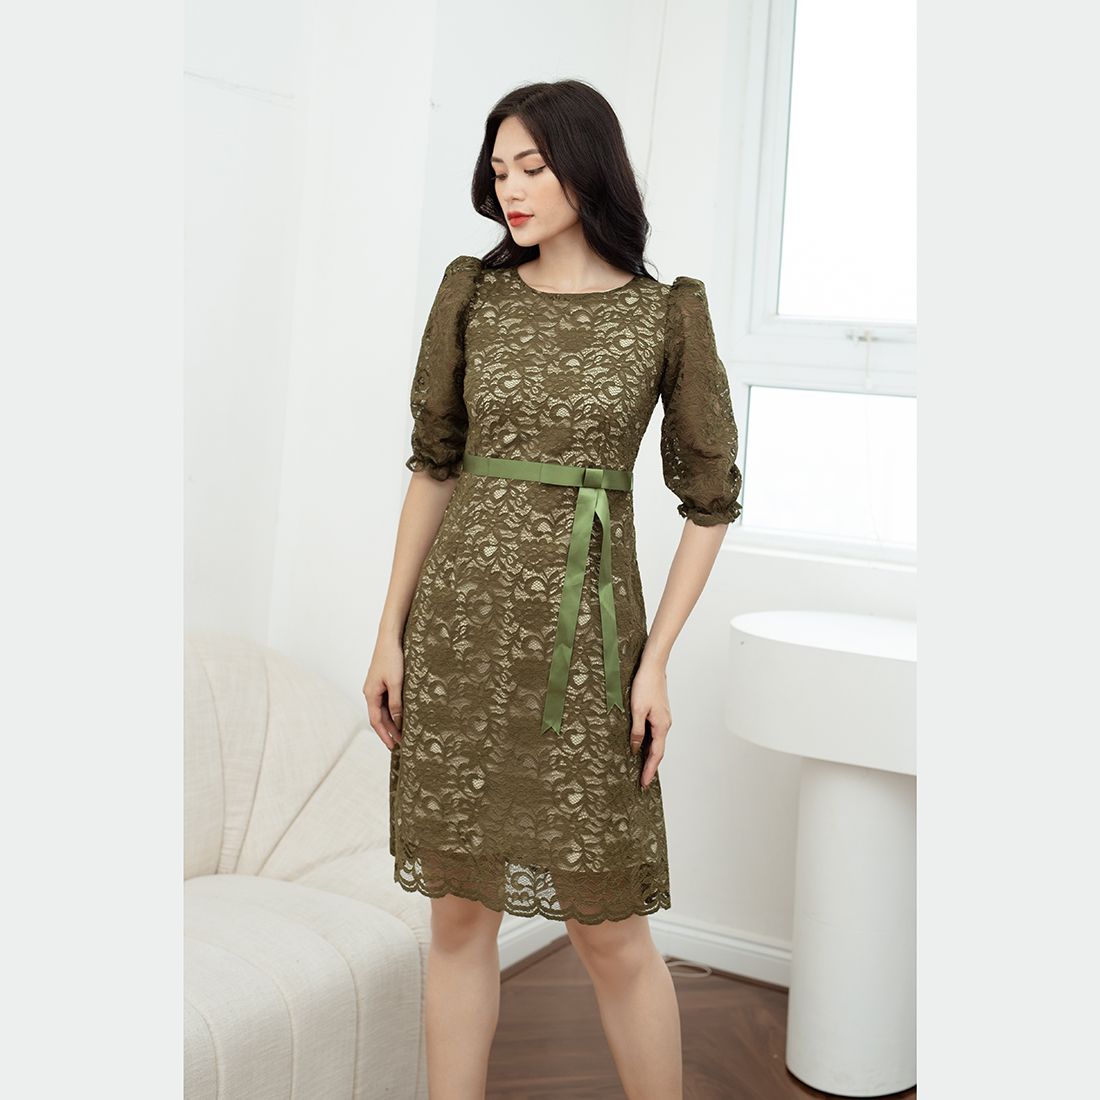 Đầm nữ lệch vai thiết kế dự tiệt sang trọng tinh tế chất vải umi cao cấp  phù hợp đi chơi, đi dạo | Shopee Việt Nam